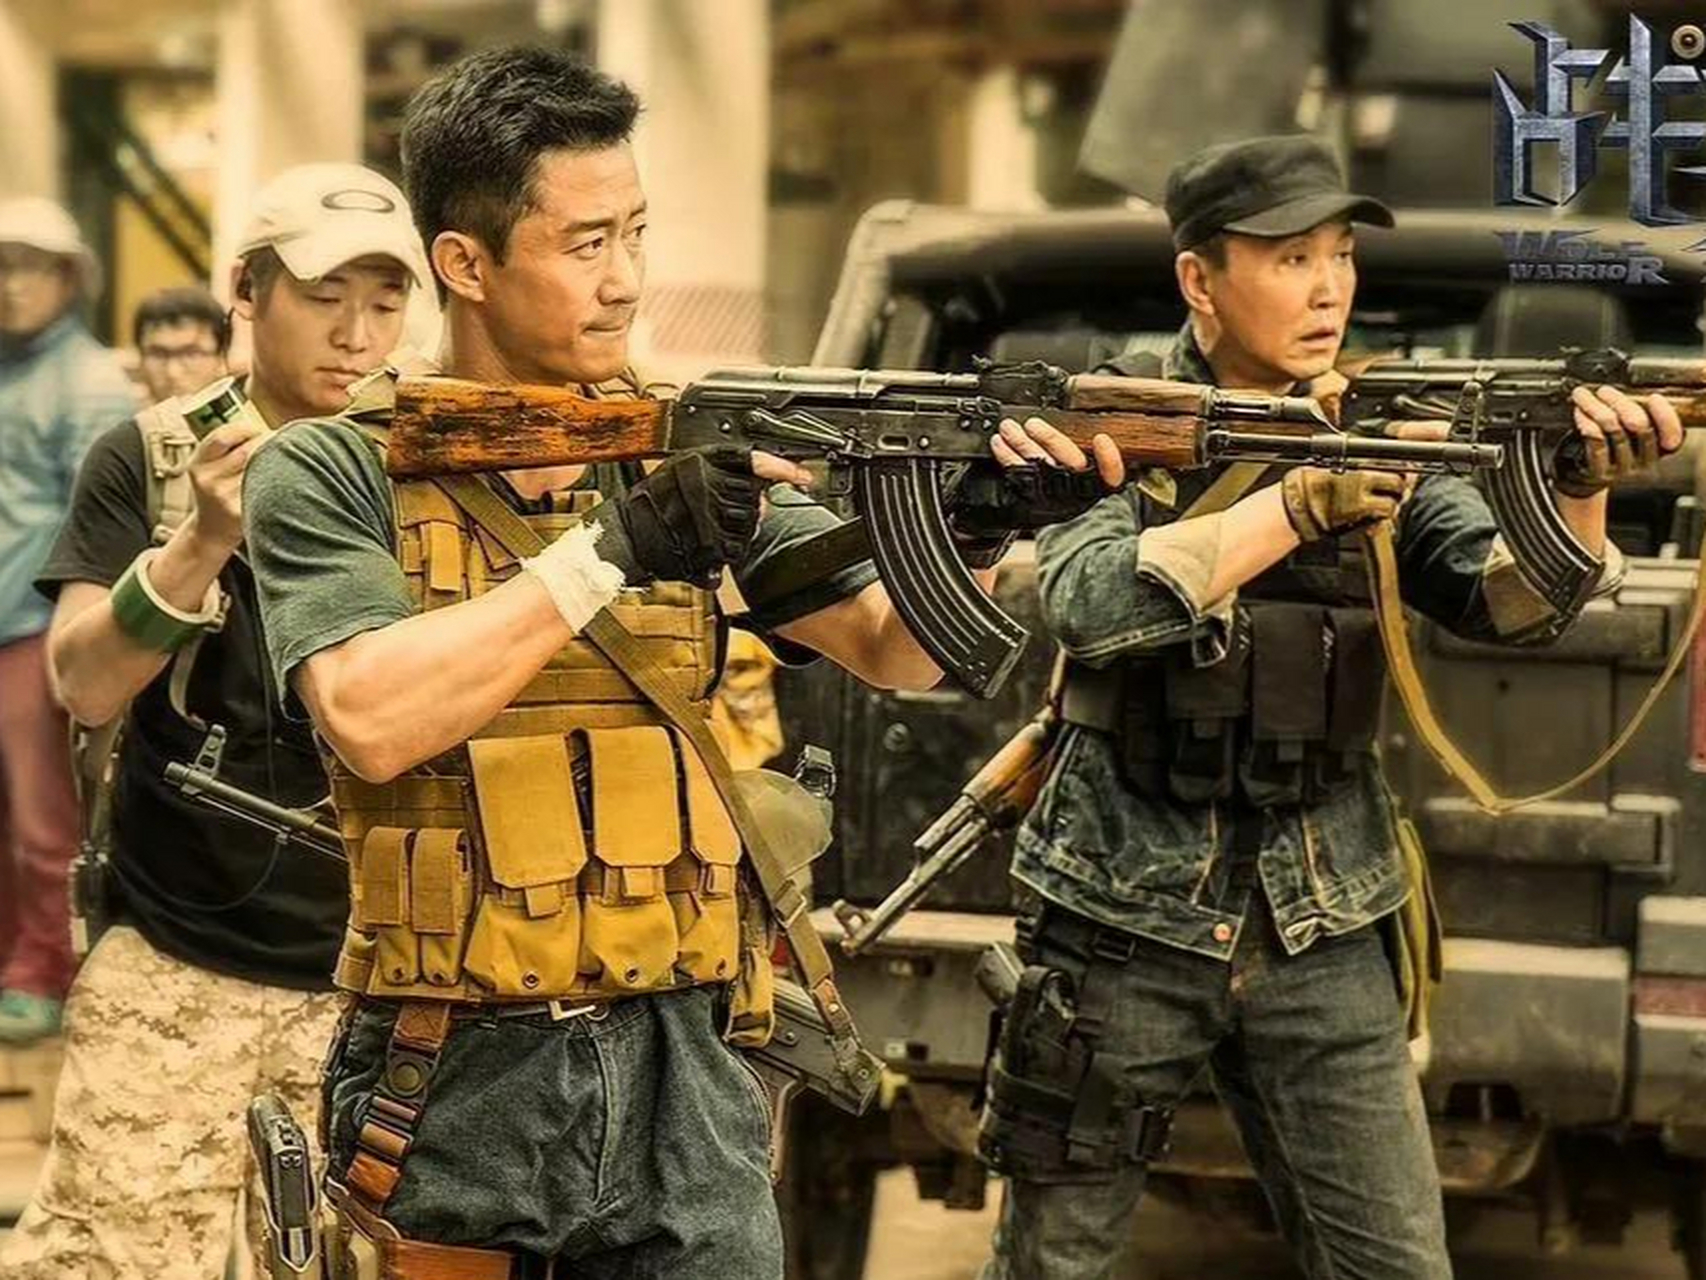 吴京主演的电影《战狼2》还创下了国产电影最高票房纪录,《长津湖》